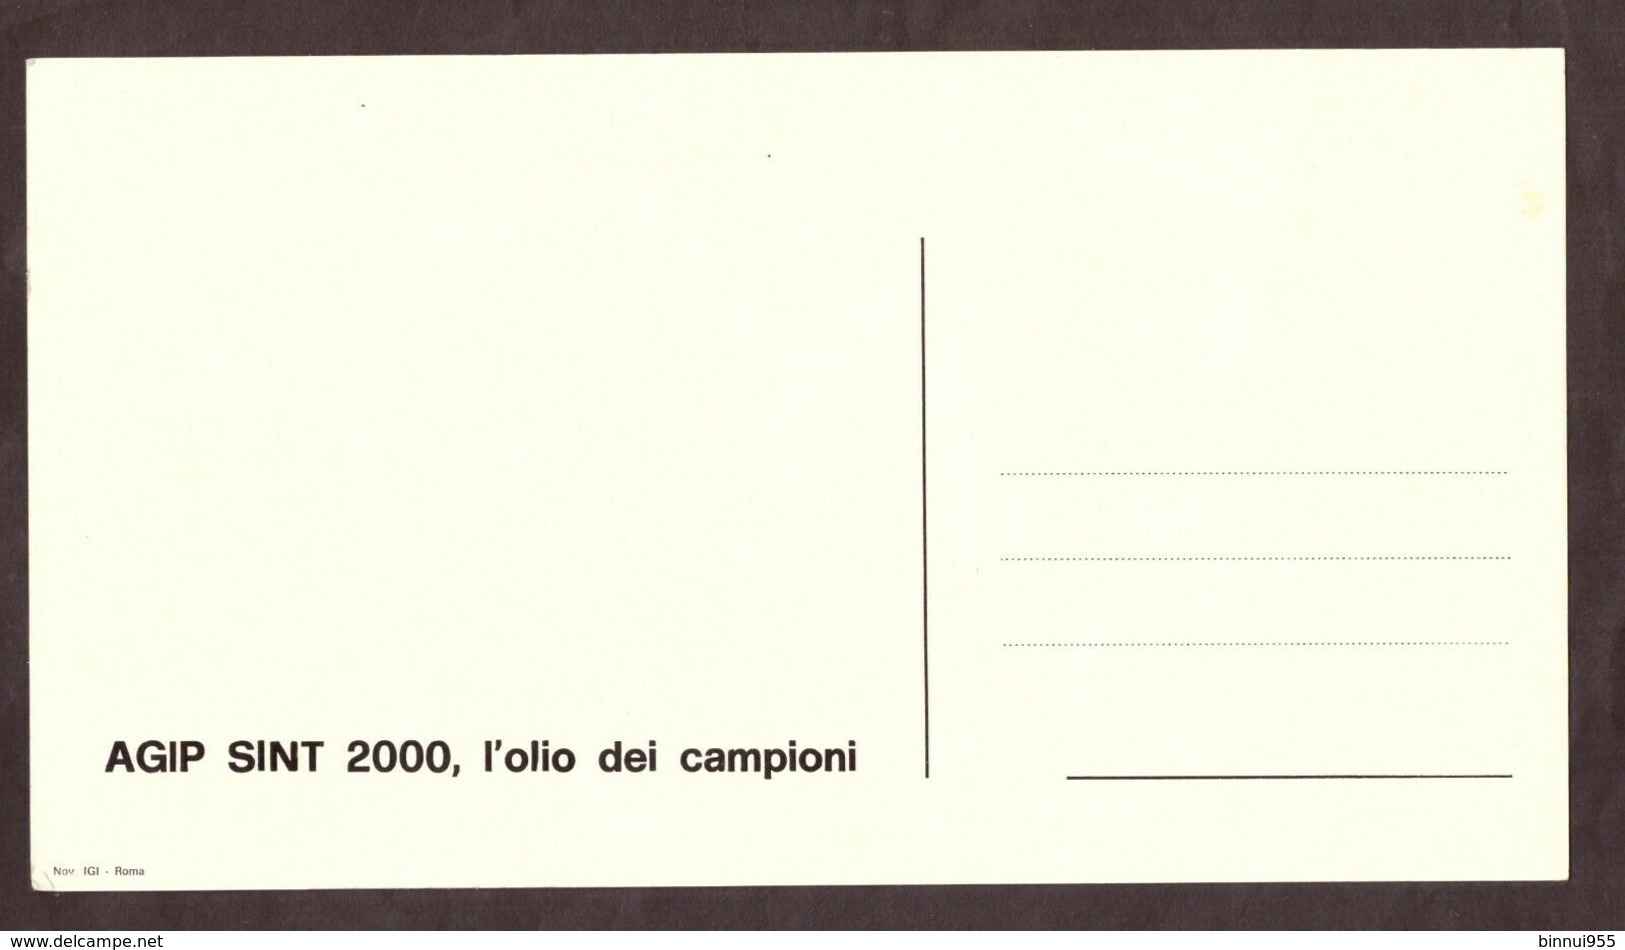 Cartolina La Nazionale Italiana Al Campionato Del Mondo Argentina 1978 - Trading Cards